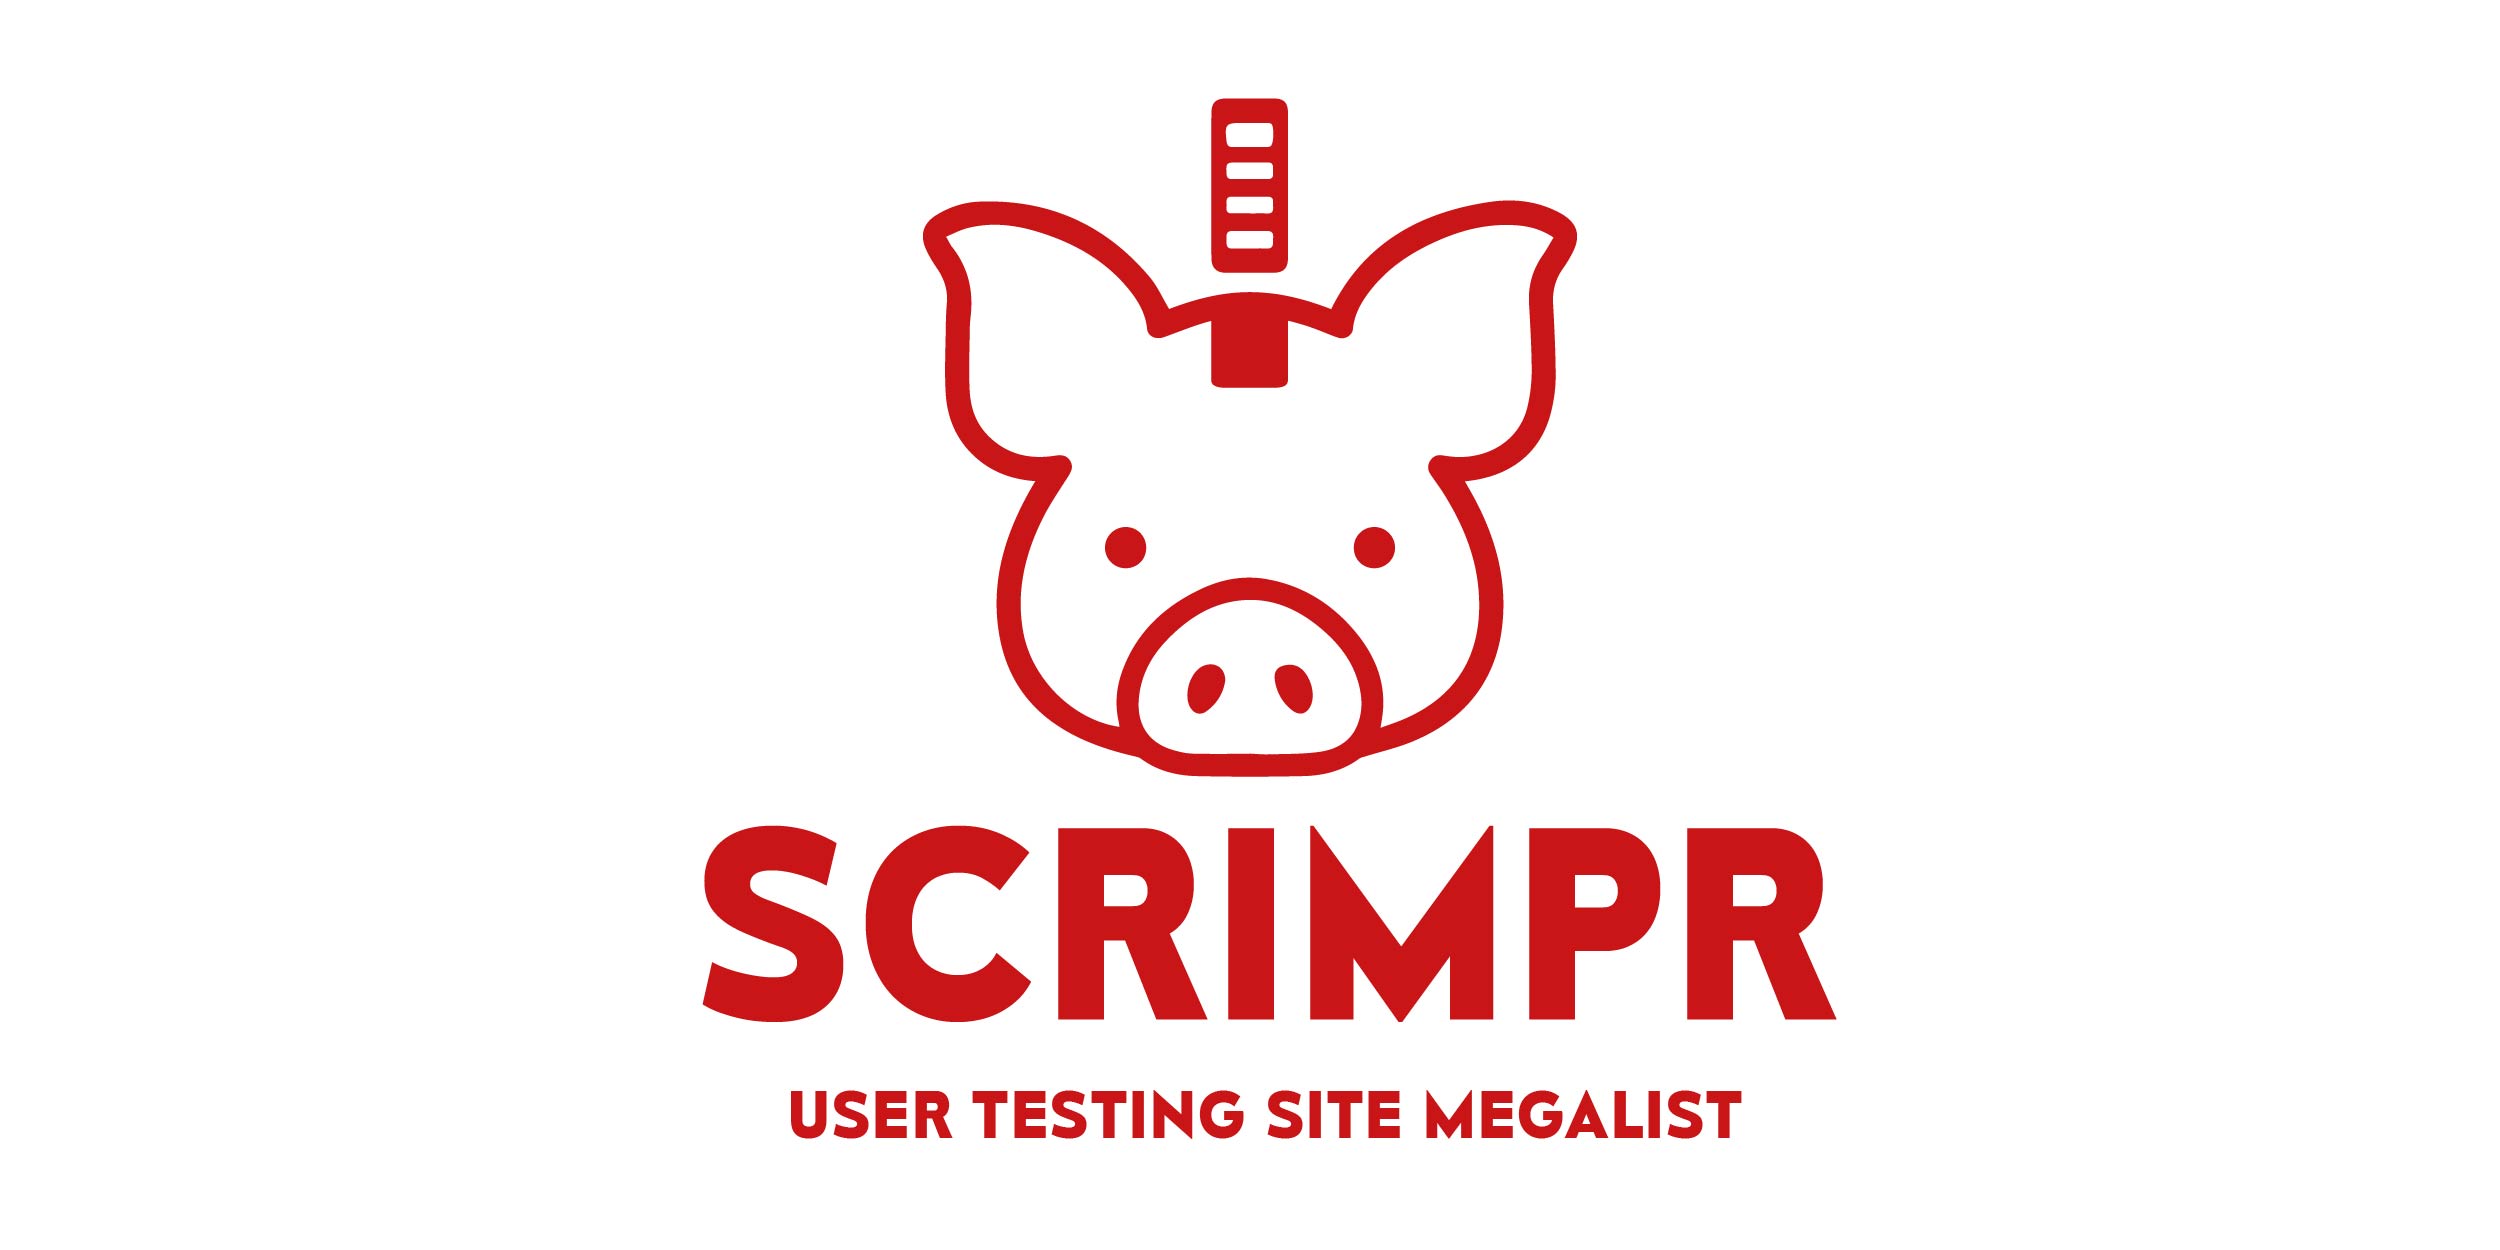 Scrimpr User Testing Site Megalist Logo